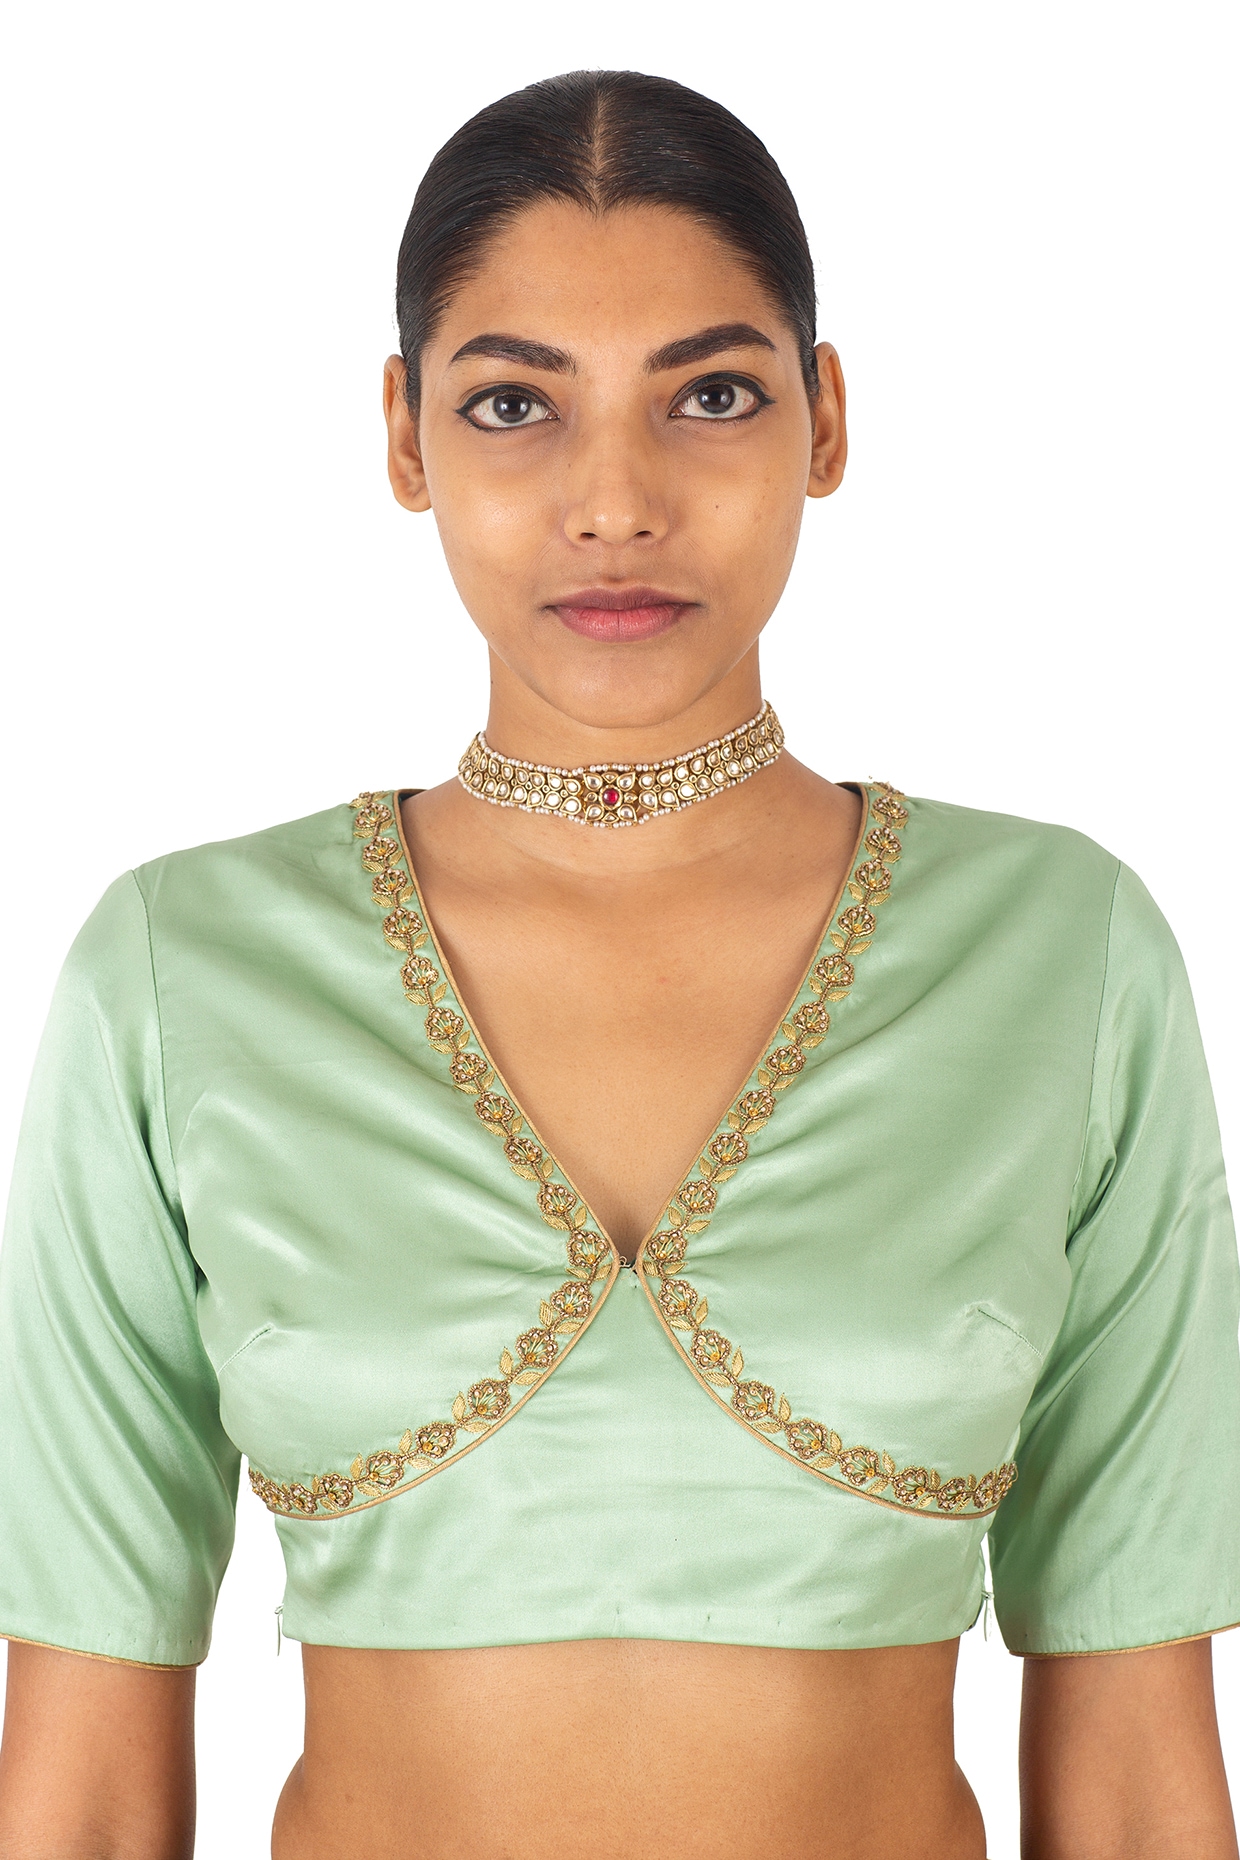 Saree blouse back & front designs | Designer blouse patterns, Best blouse  designs, Saree blouse designs